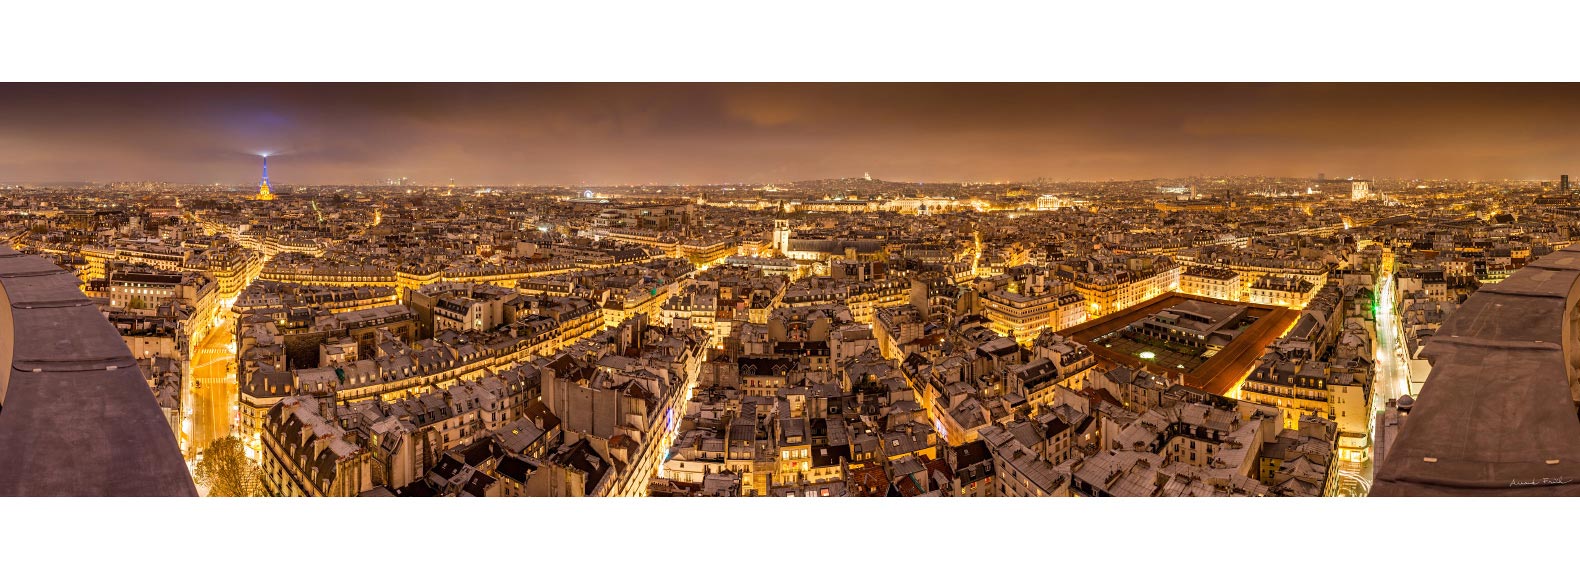 Plus belle vue de Paris de nuit - Panorama sur Paris